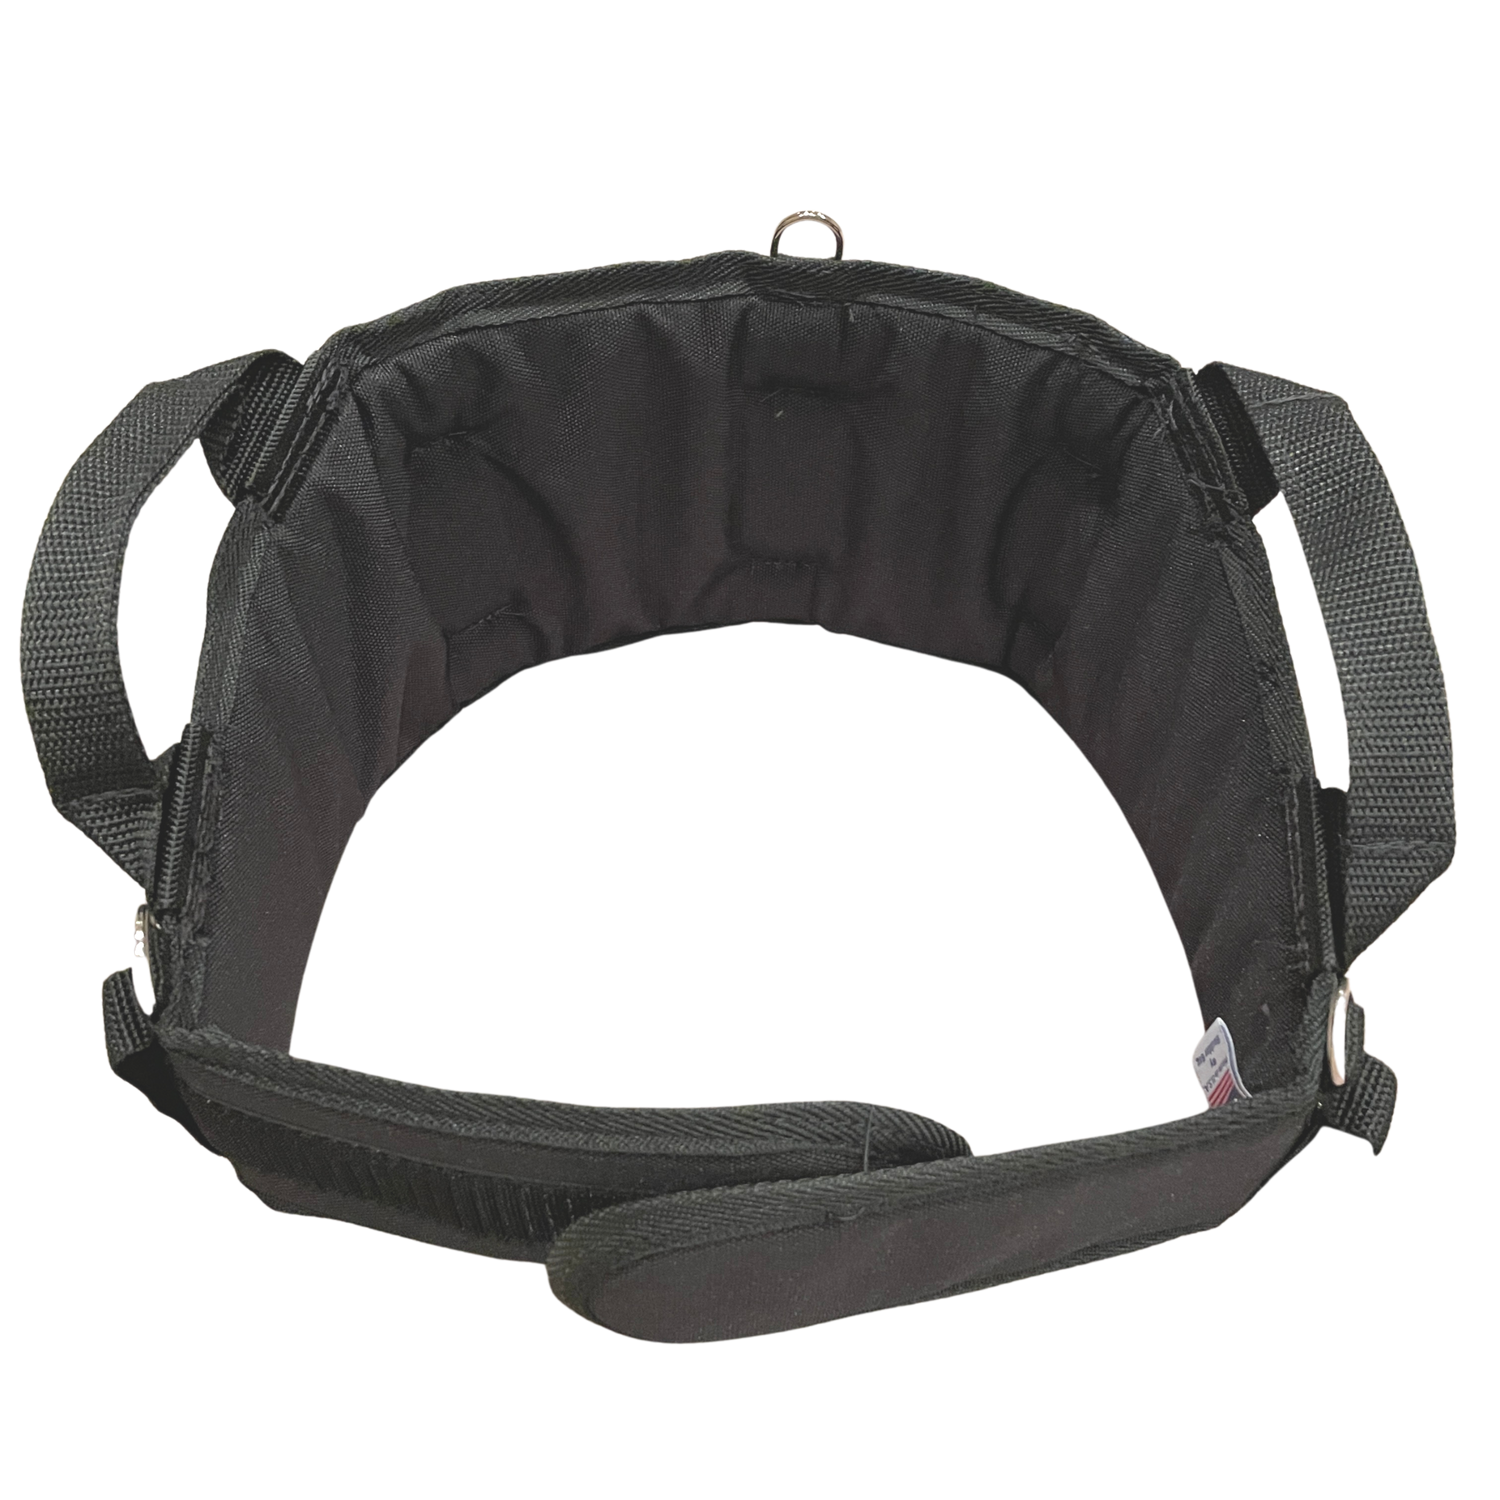 Boulder Bag MAX Comfort Belt - MAX502 (Pad only, Nylon Belt sold separately)